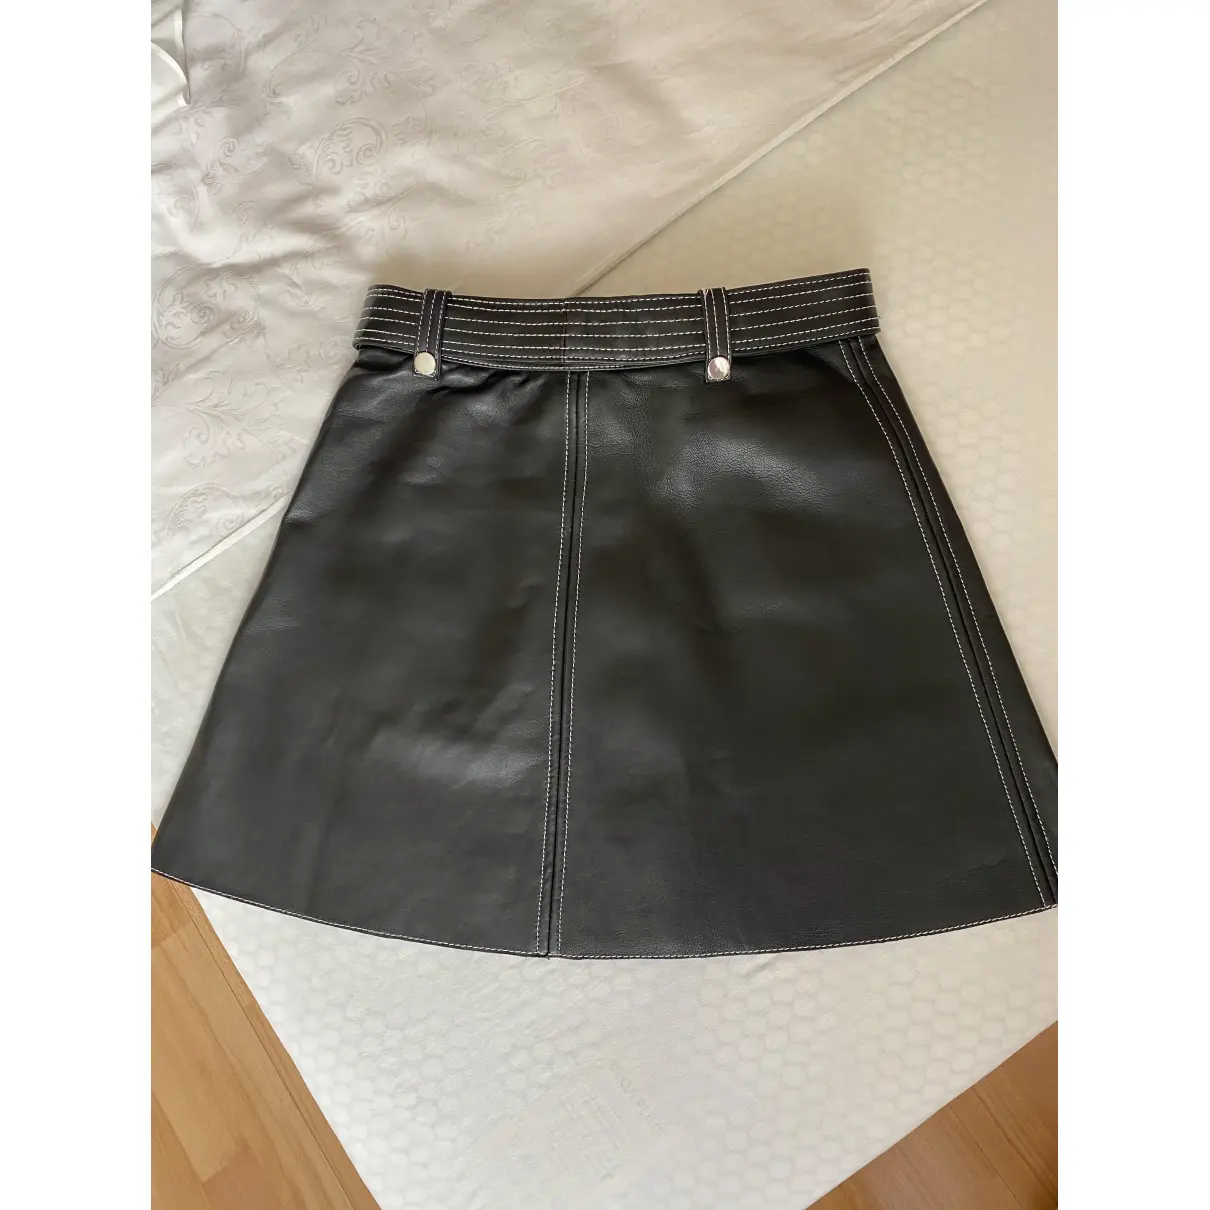 Buy Maje Spring Summer 2020 leather mini skirt online